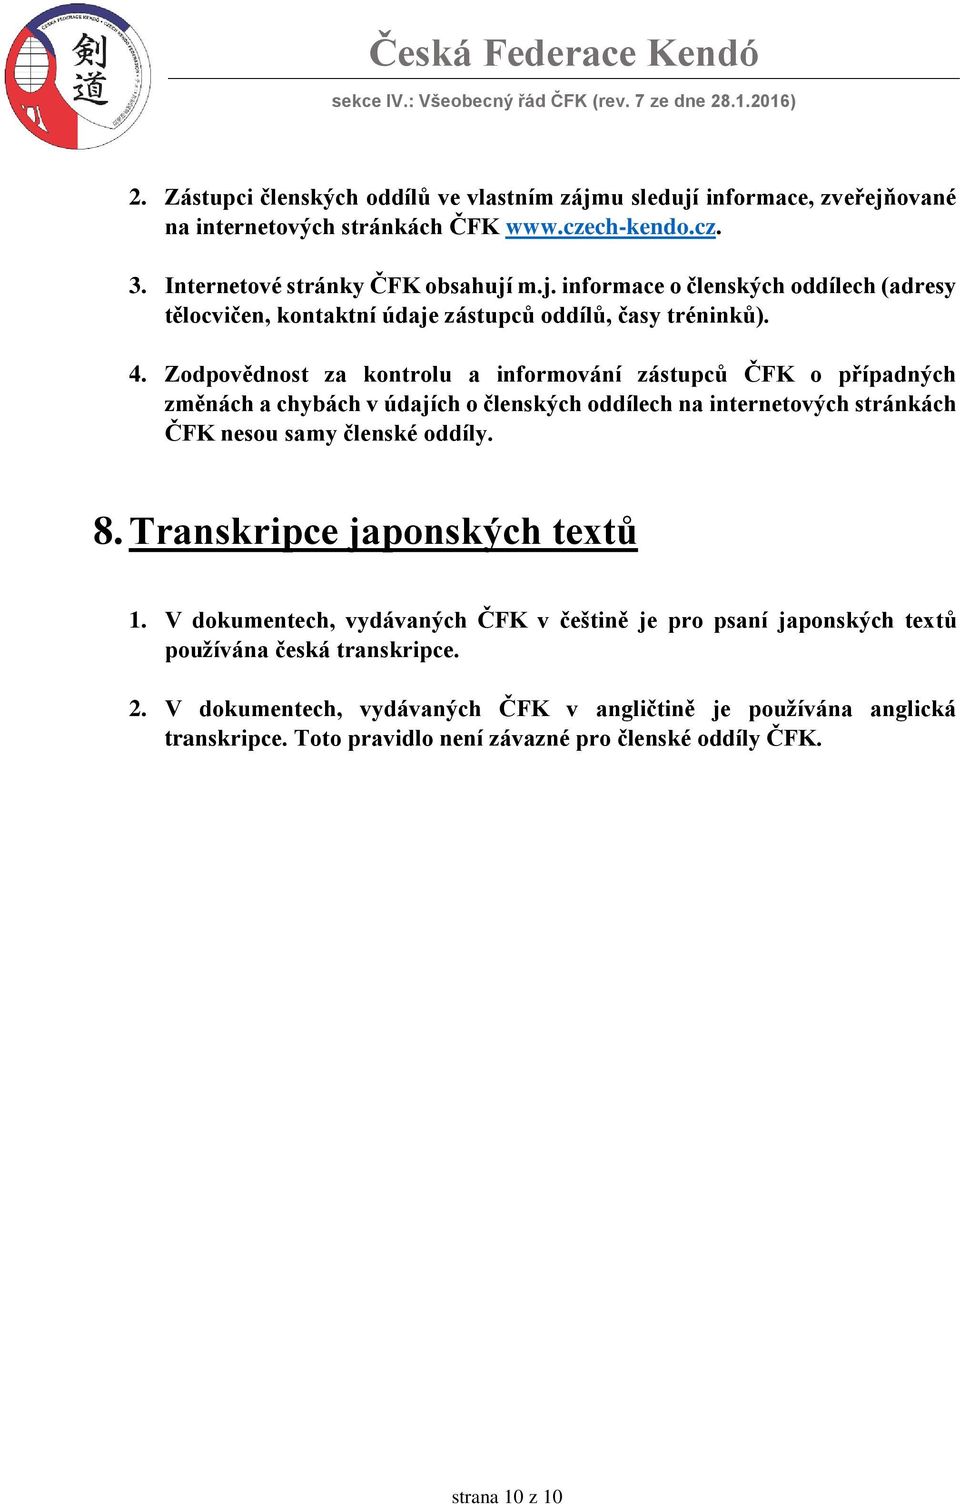 Transkripce japonských textů 1. V dokumentech, vydávaných ČFK v češtině je pro psaní japonských textů používána česká transkripce. 2.